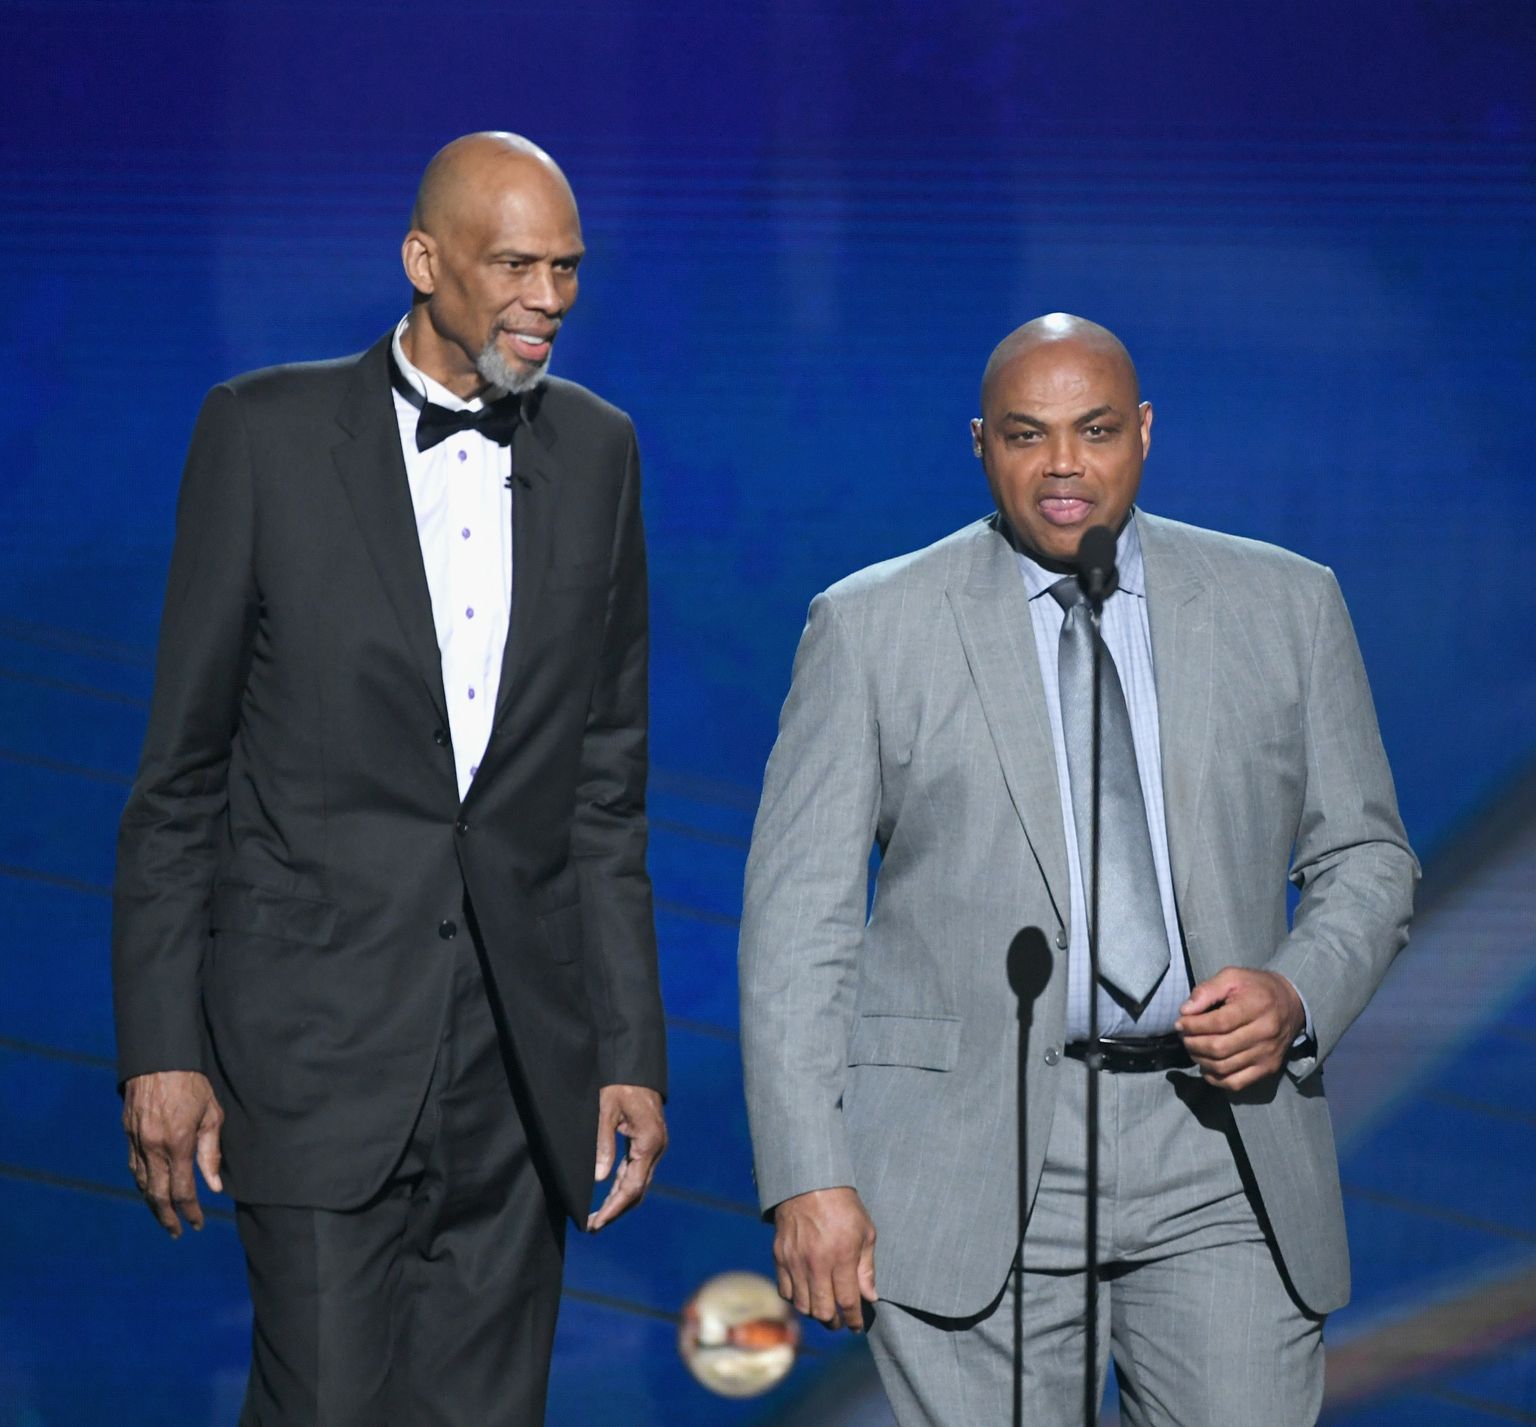 NBA legendid Kareem Abdul-Jabbar (vasakul) ja Charles Barkley on mõlemad jäänud petistest agentide ohvriteks.